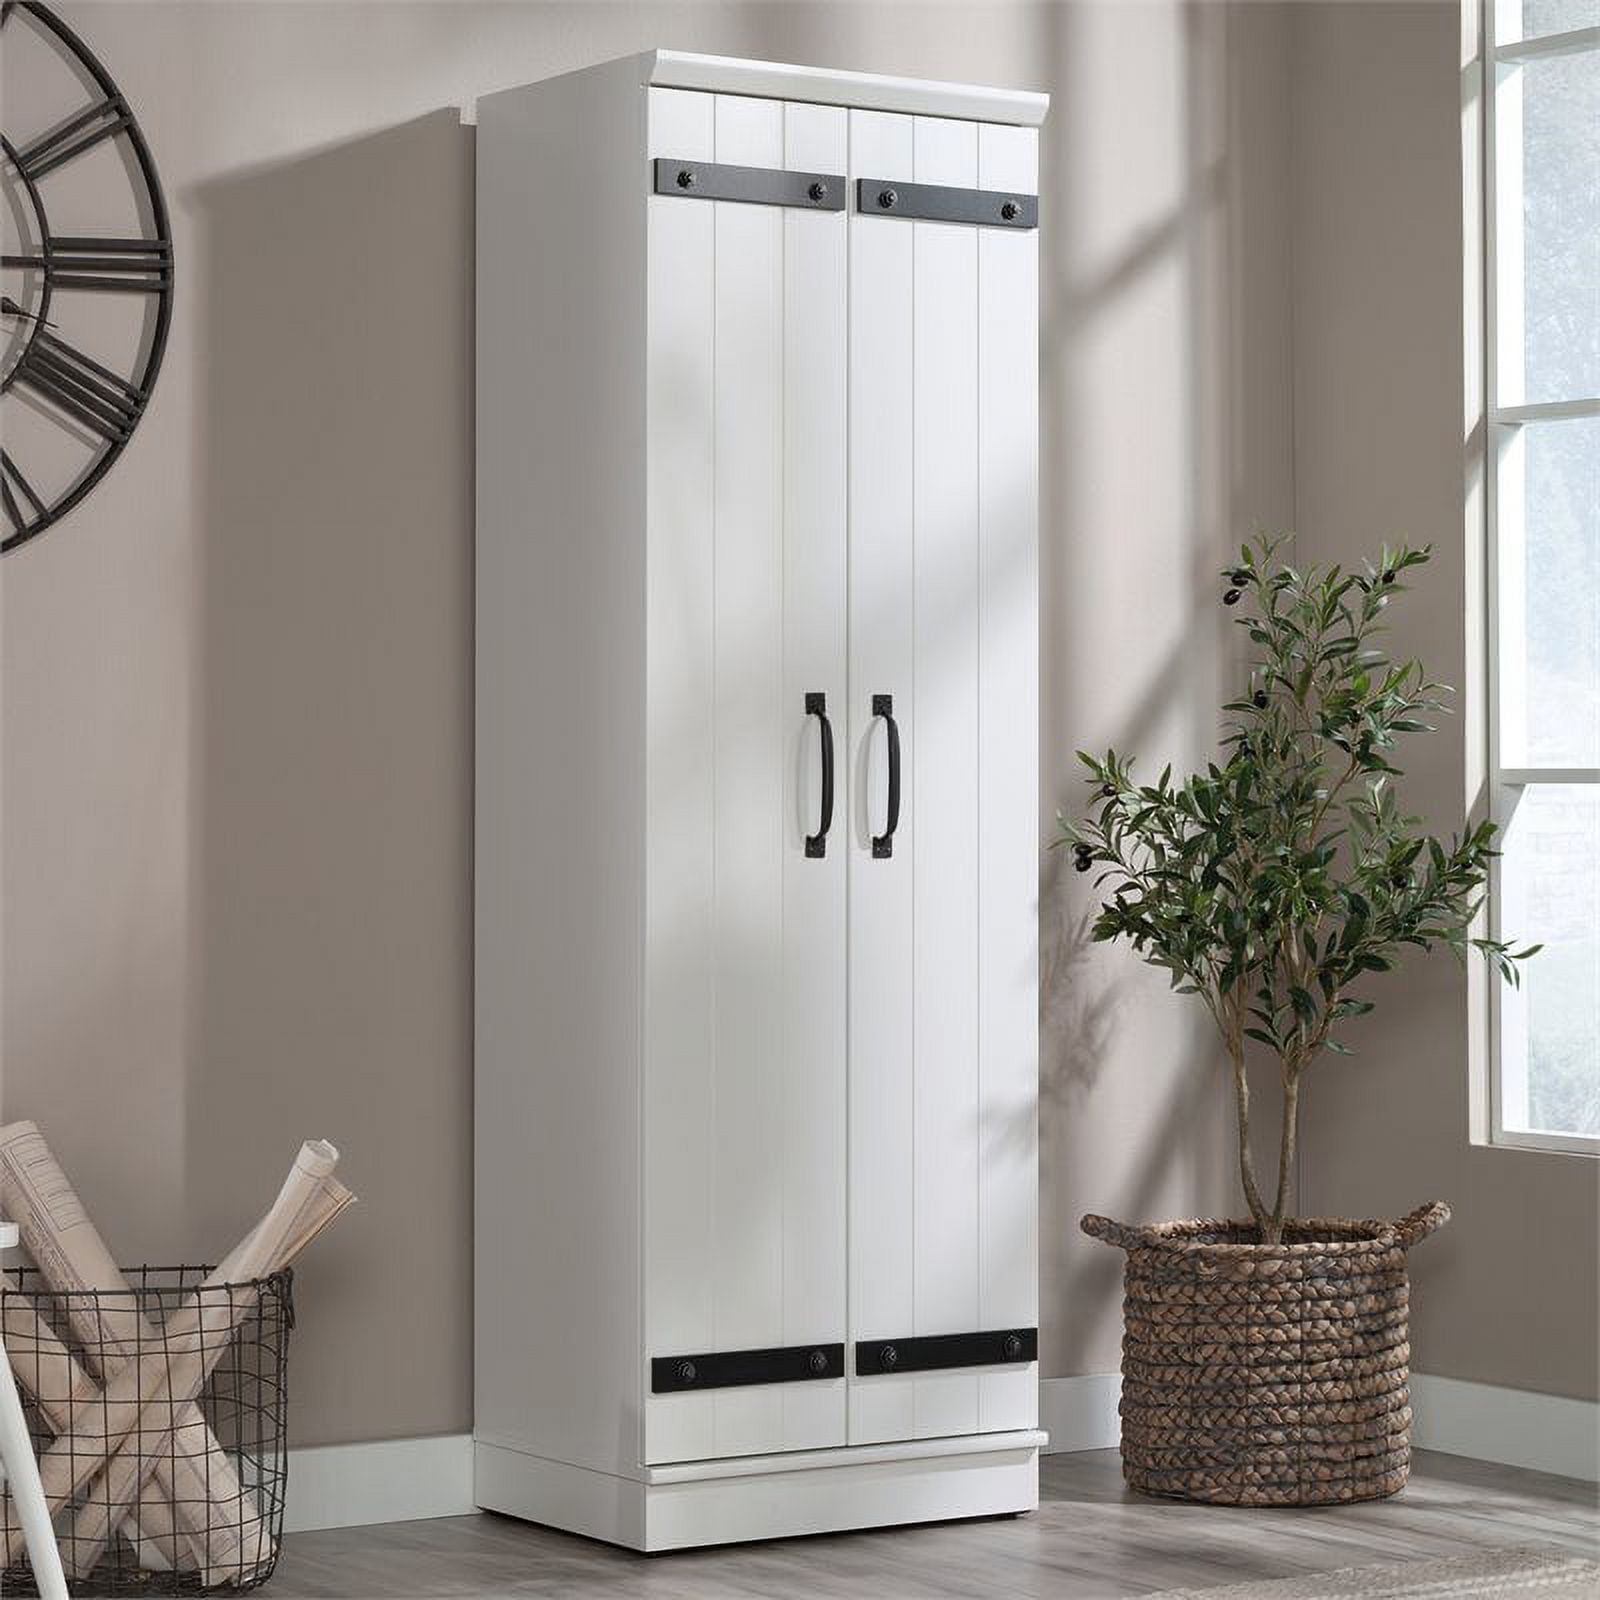 Sauder HomePlus Storage Cabinet in Soft White